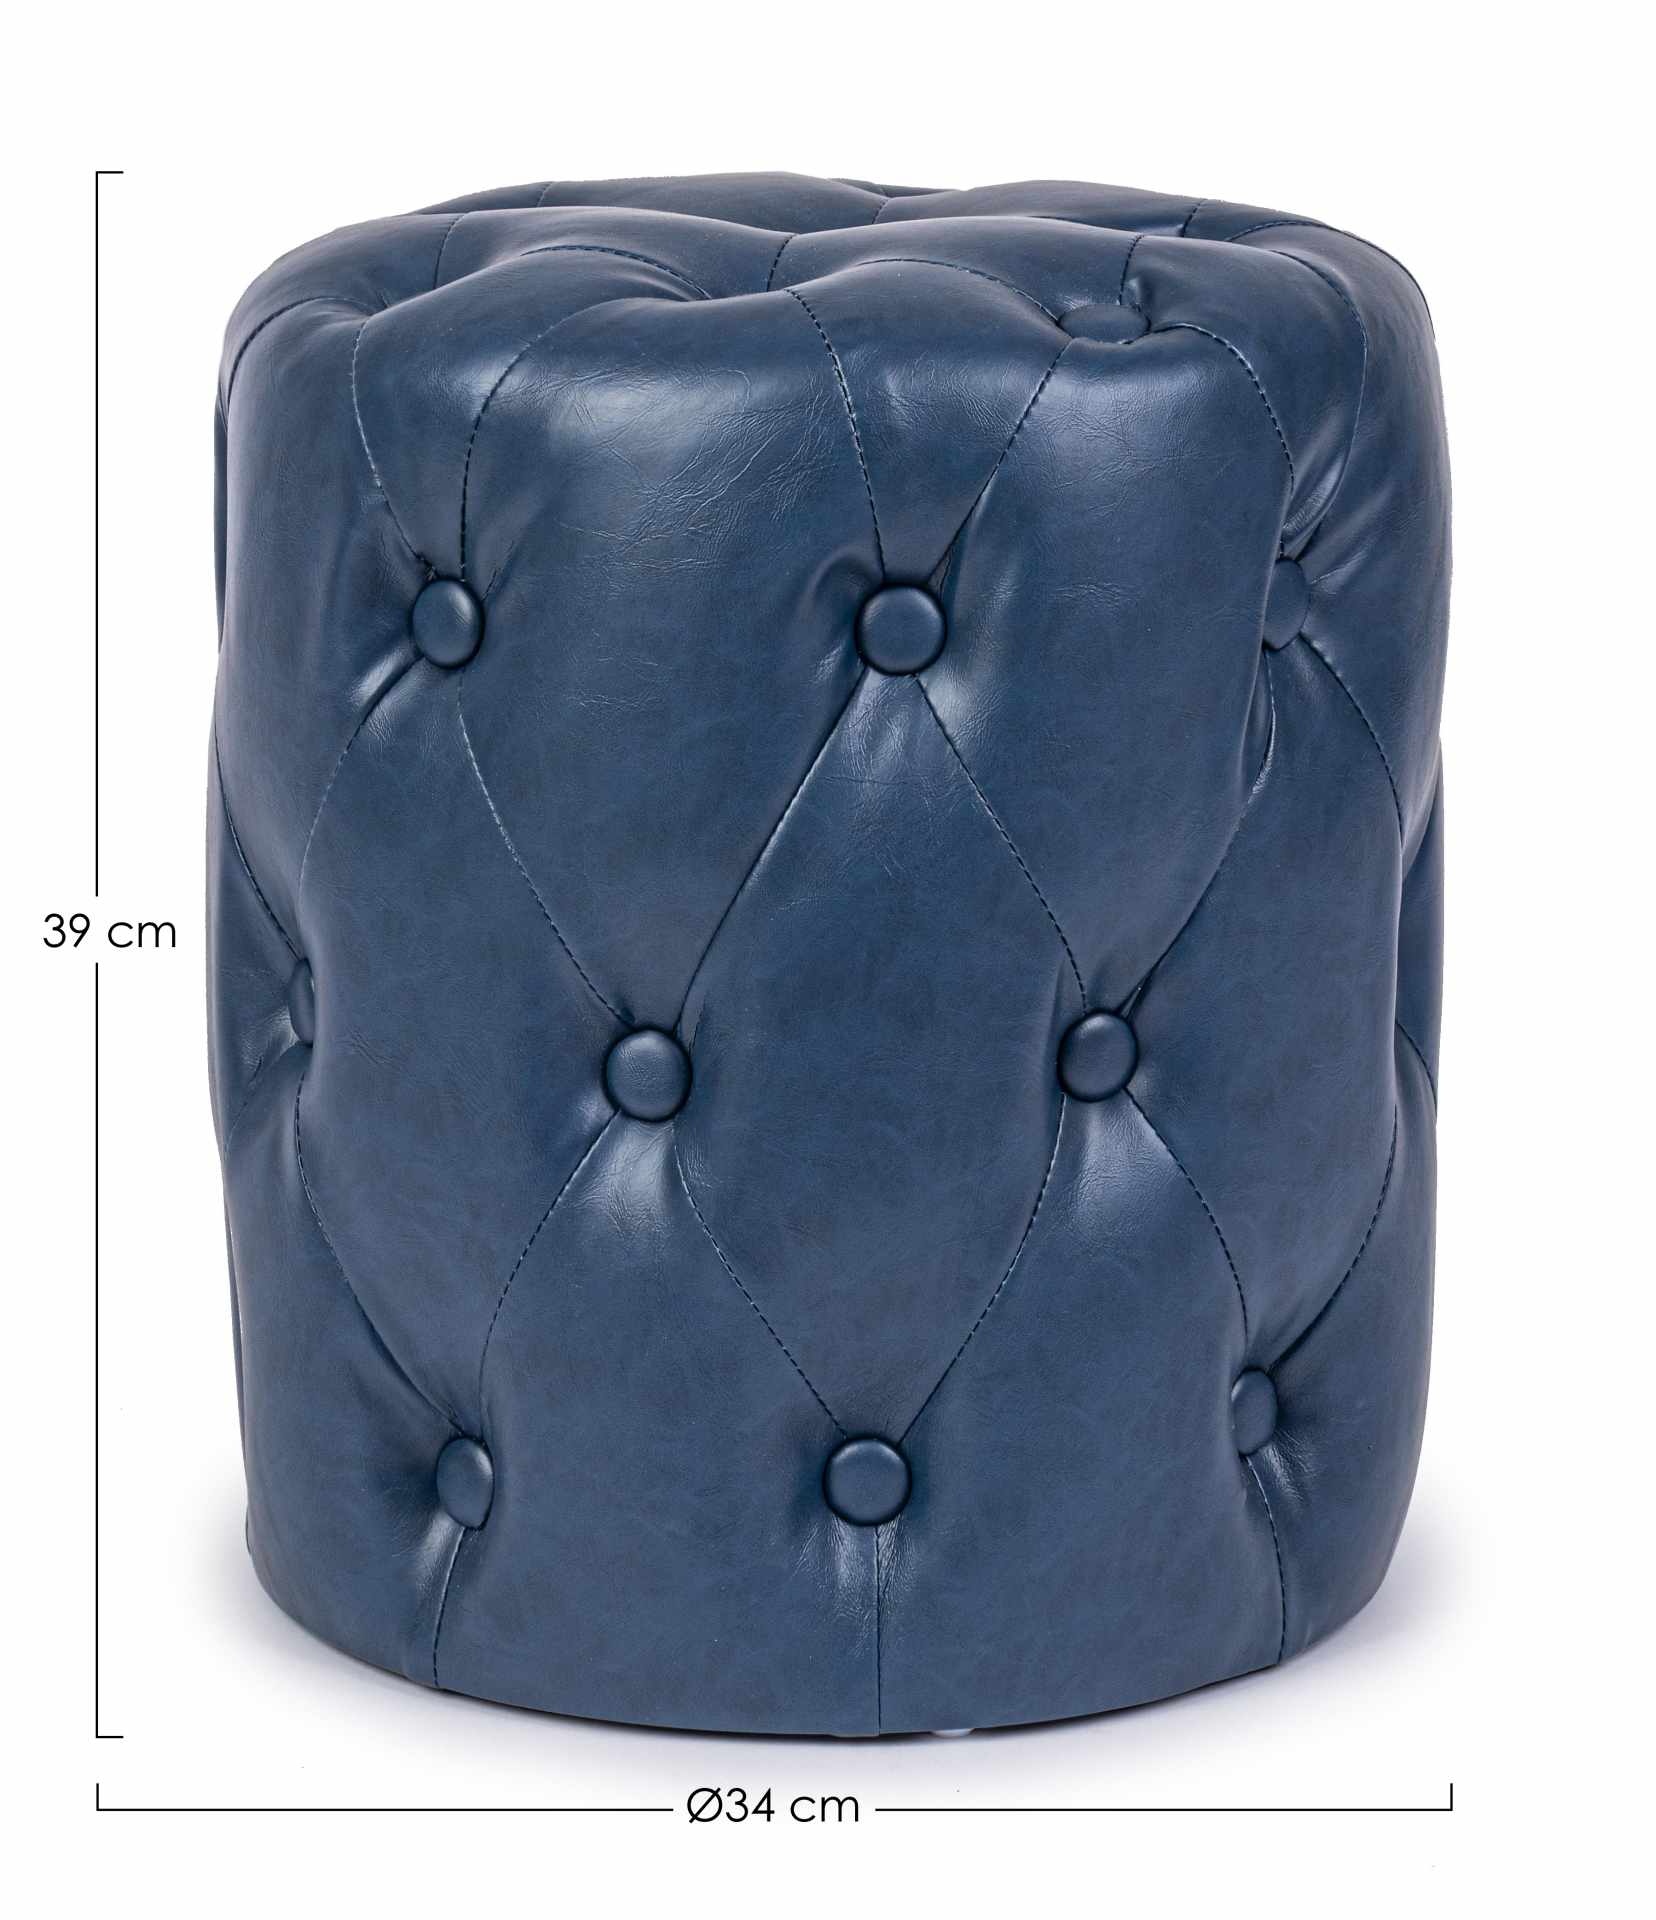 Der Pouf Batilda überzeugt mit seinem klassischen Design. Gefertigt wurde er aus Kunstleder in Chesterfiel-Optik, welches einen blauen Farbton besitzt. Das Gestell ist aus Kiefernholz. Der Durchmesser beträgt 34 cm.